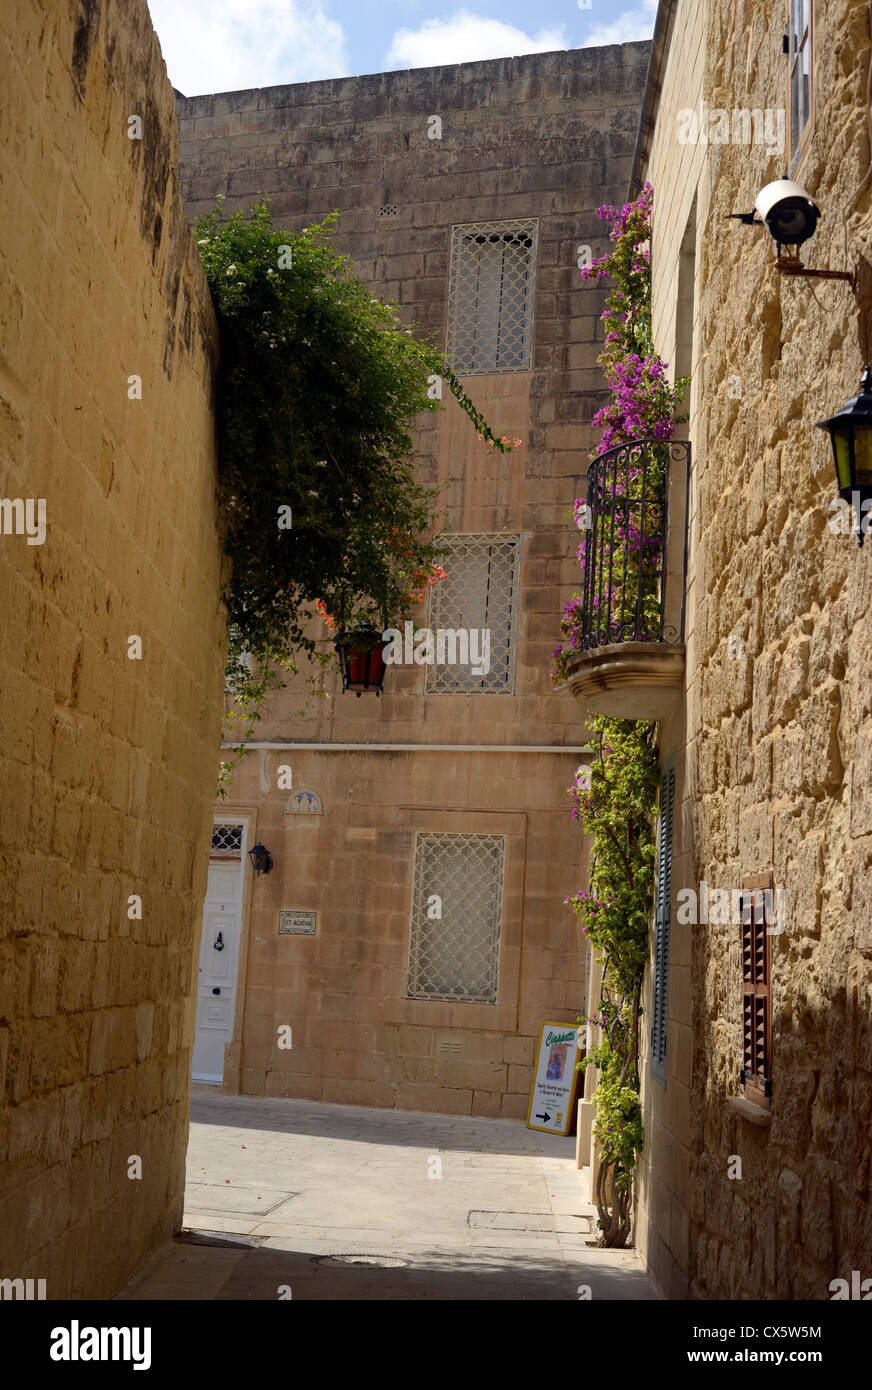 Malta, Valetta Old Town Stock Photo